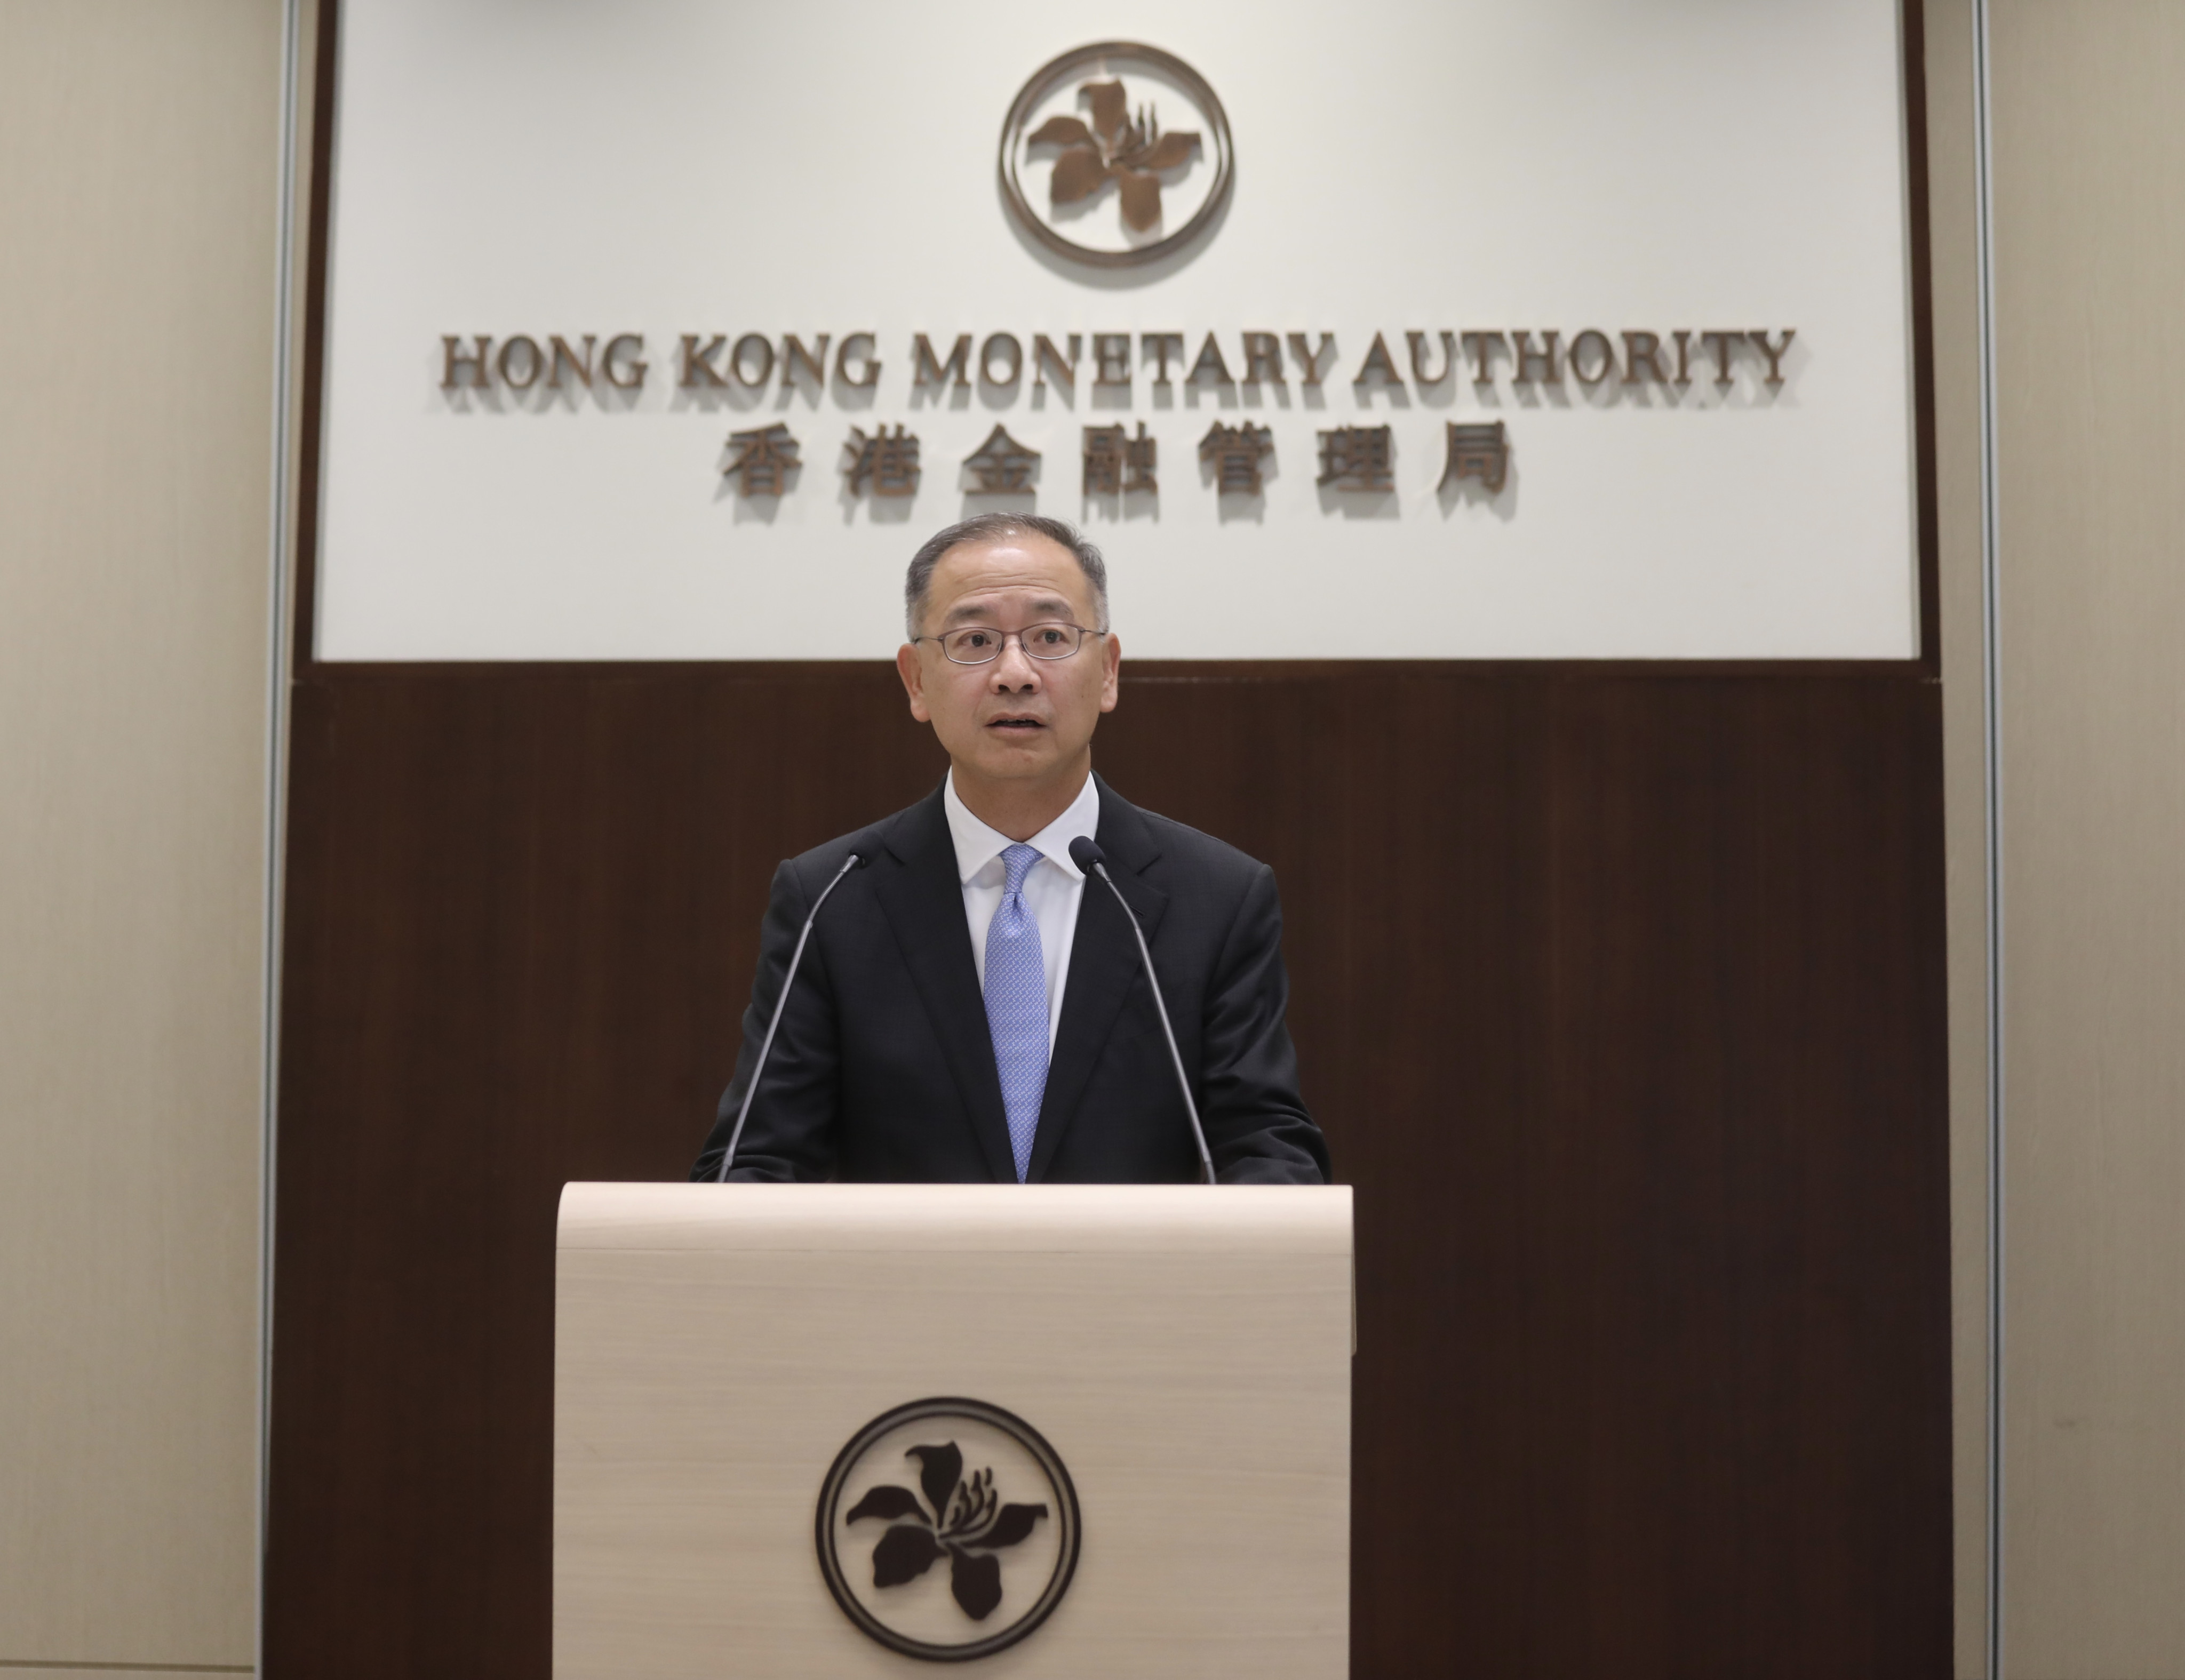 Hong Kong Monetary Authority CEO Eddie Yue Wai-man. Photo: SCMP/ Xiaomei Chen